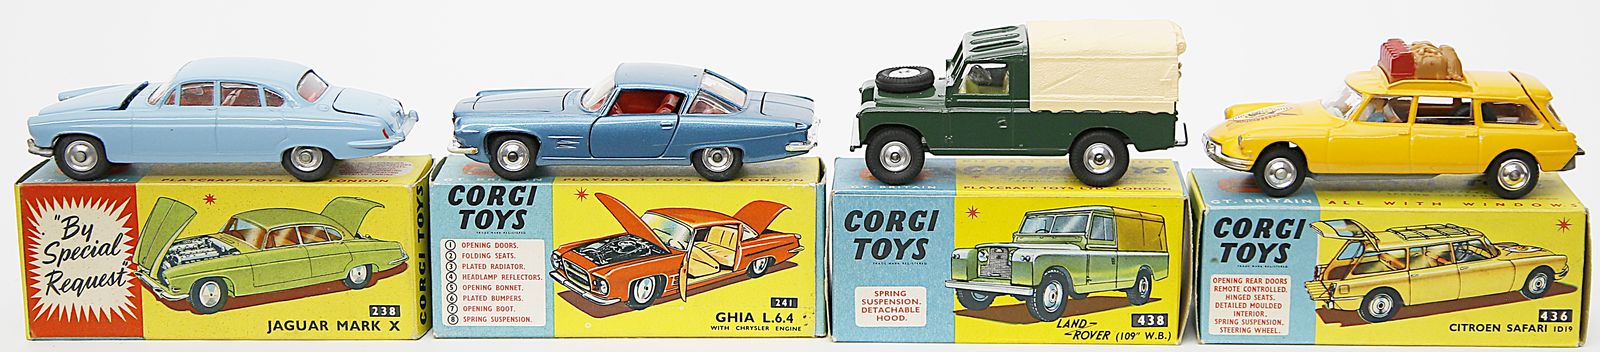 4 Spielzeugautos, Corgi Toys.